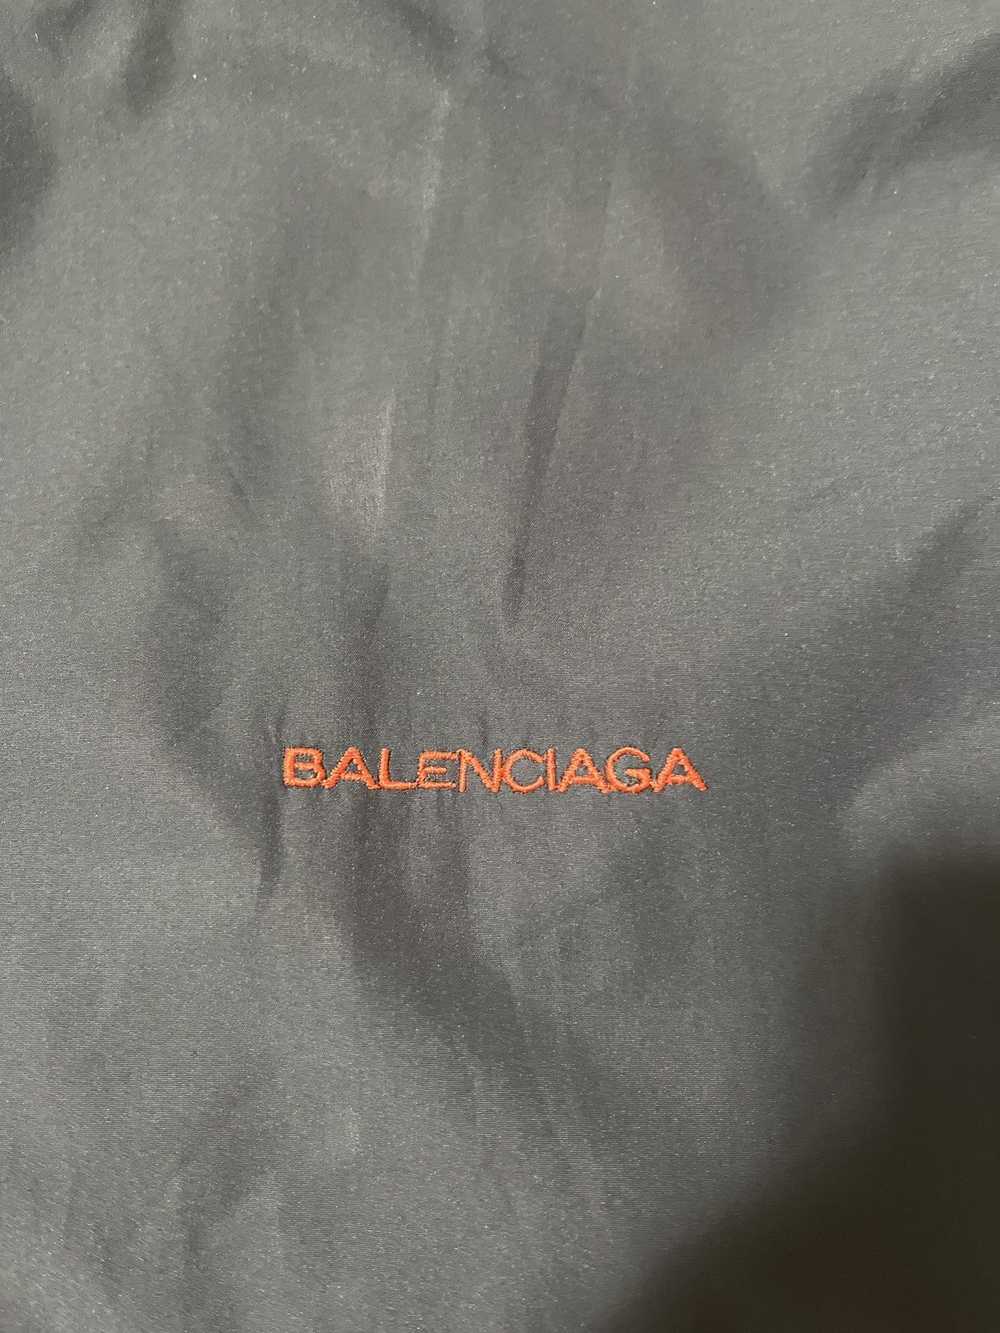 Balenciaga Balenciaga Bomber Jacket 2001 - image 5